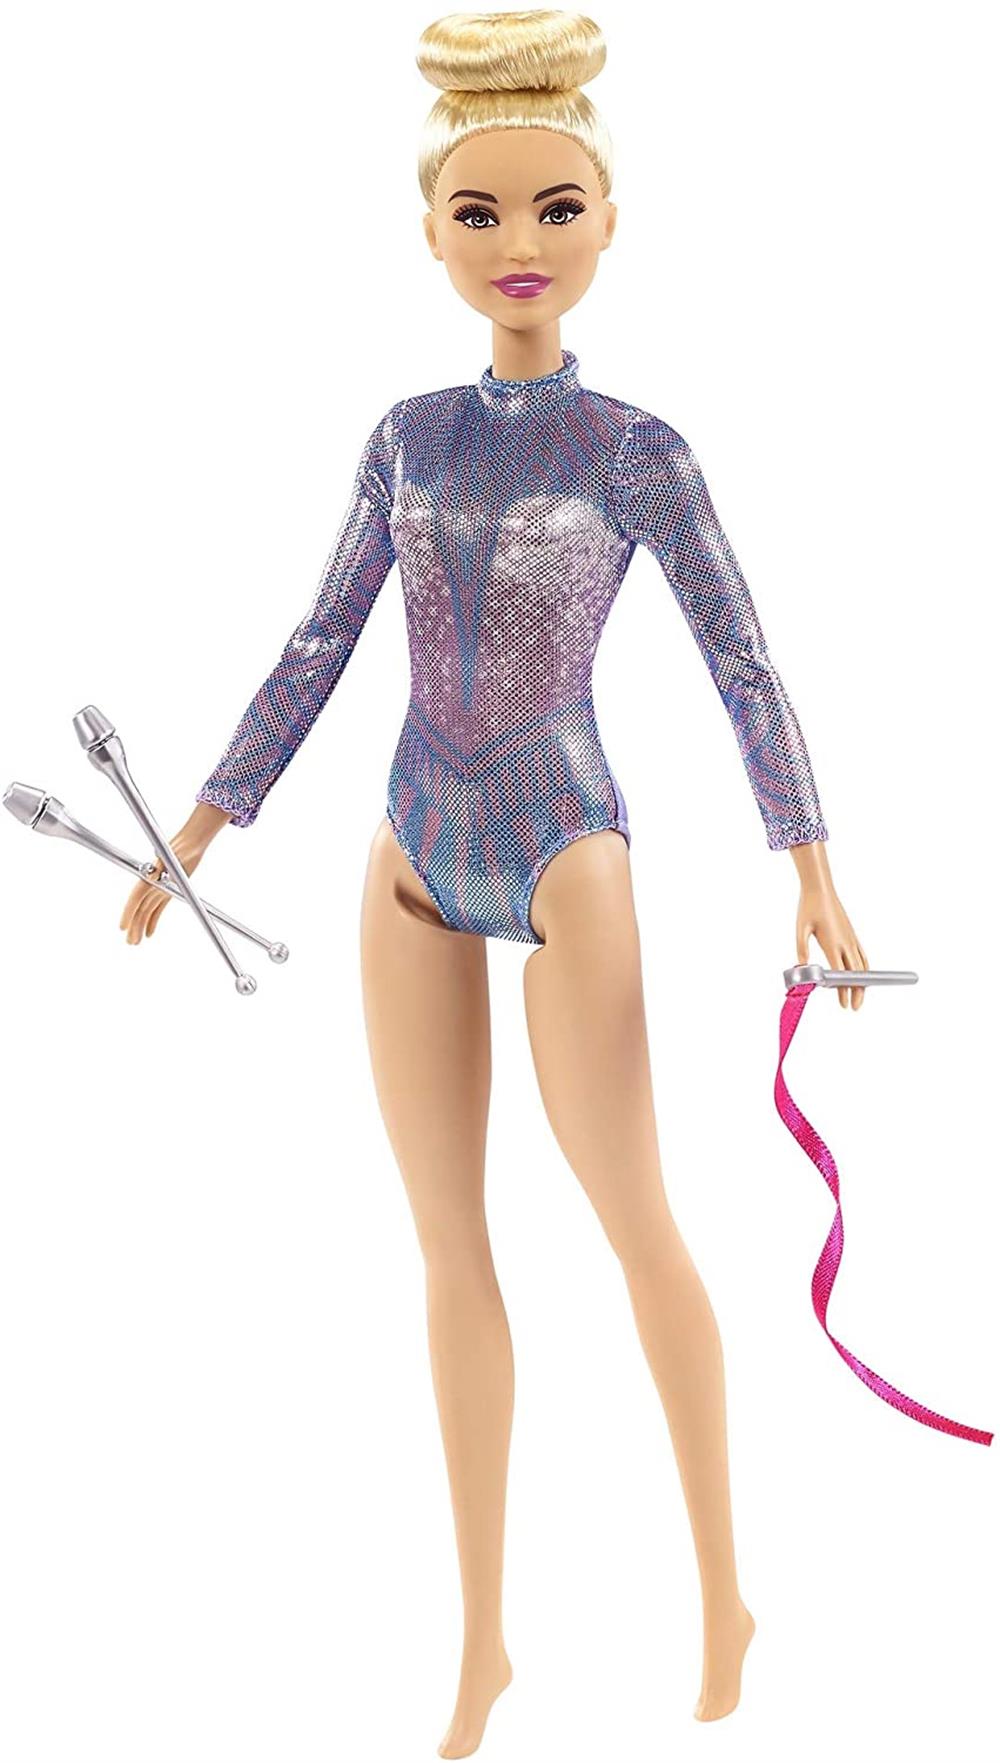 Barbie Rhythmic Gymnast Doll with Colorful Metallic Leotard, 2 Batons & Ribbon Accessory